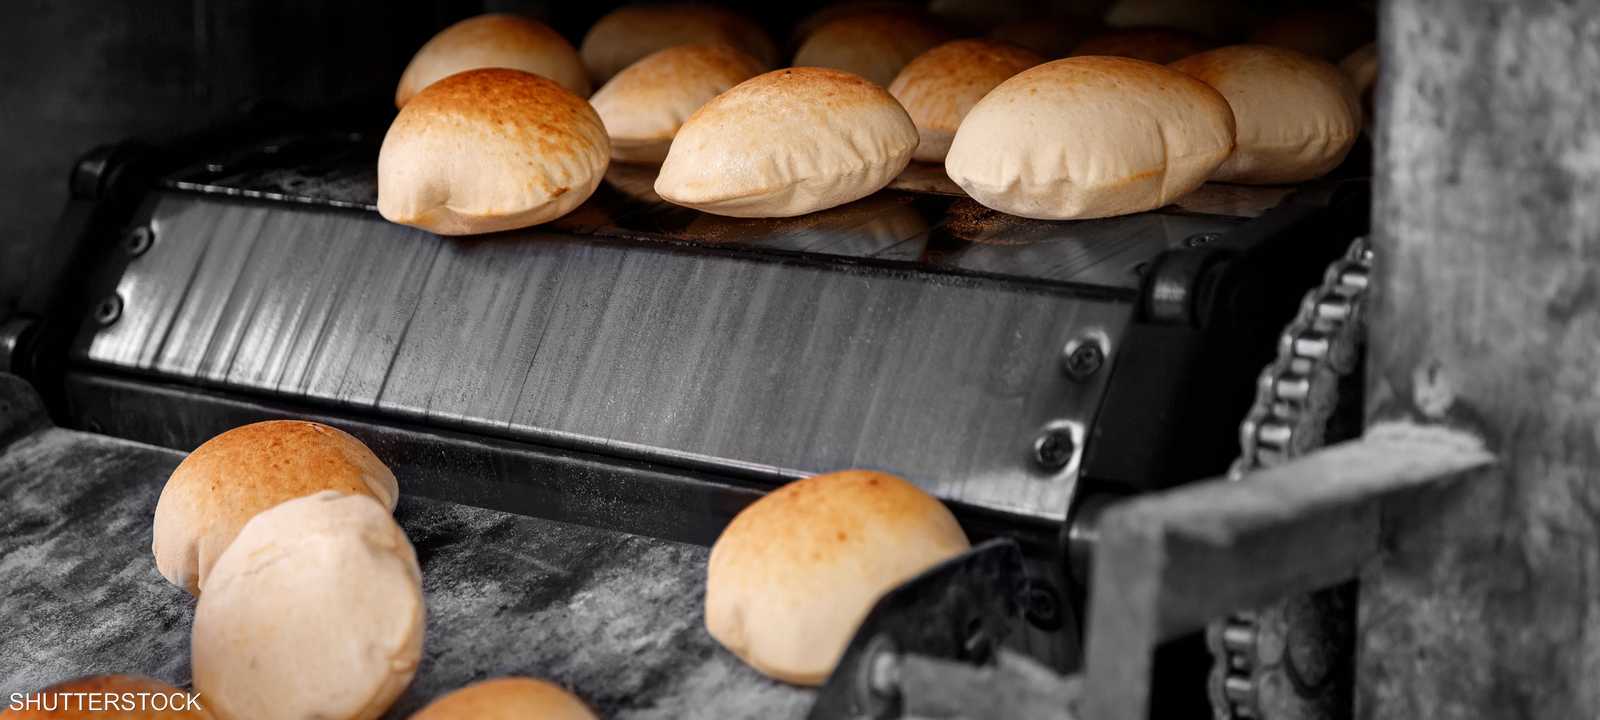 رفع أسعار الخبز المدعوم في مصر